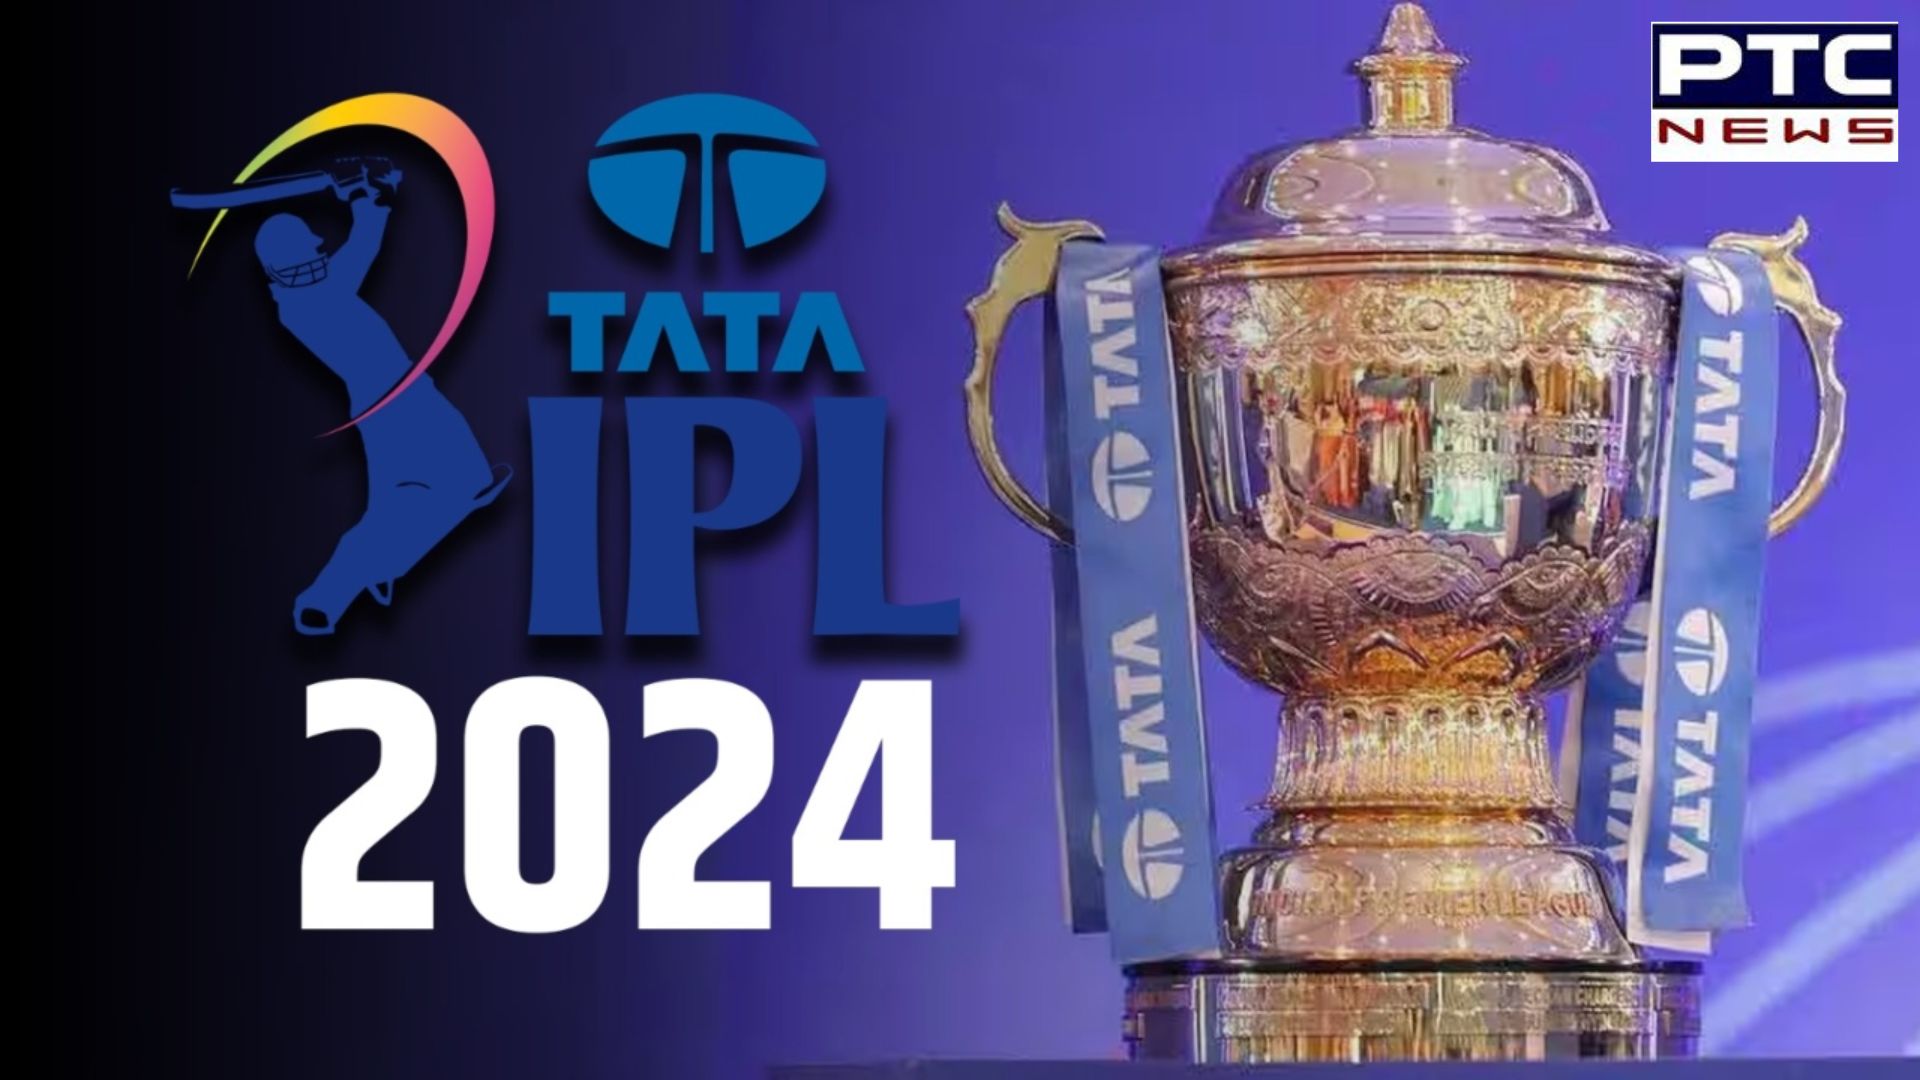 IPL 2024 Full Schedule: IPL ਦਾ ਬਾਕੀ ਦਾ ਸ਼ਡਿਊਲ ਹੋਇਆ ਜਾਰੀ, ਜਾਣੋ ਕਦੋਂ ਅਤੇ ਕਿੱਥੇ ਖੇਡਿਆ ਜਾਵੇਗਾ ਫਾਈਨਲ